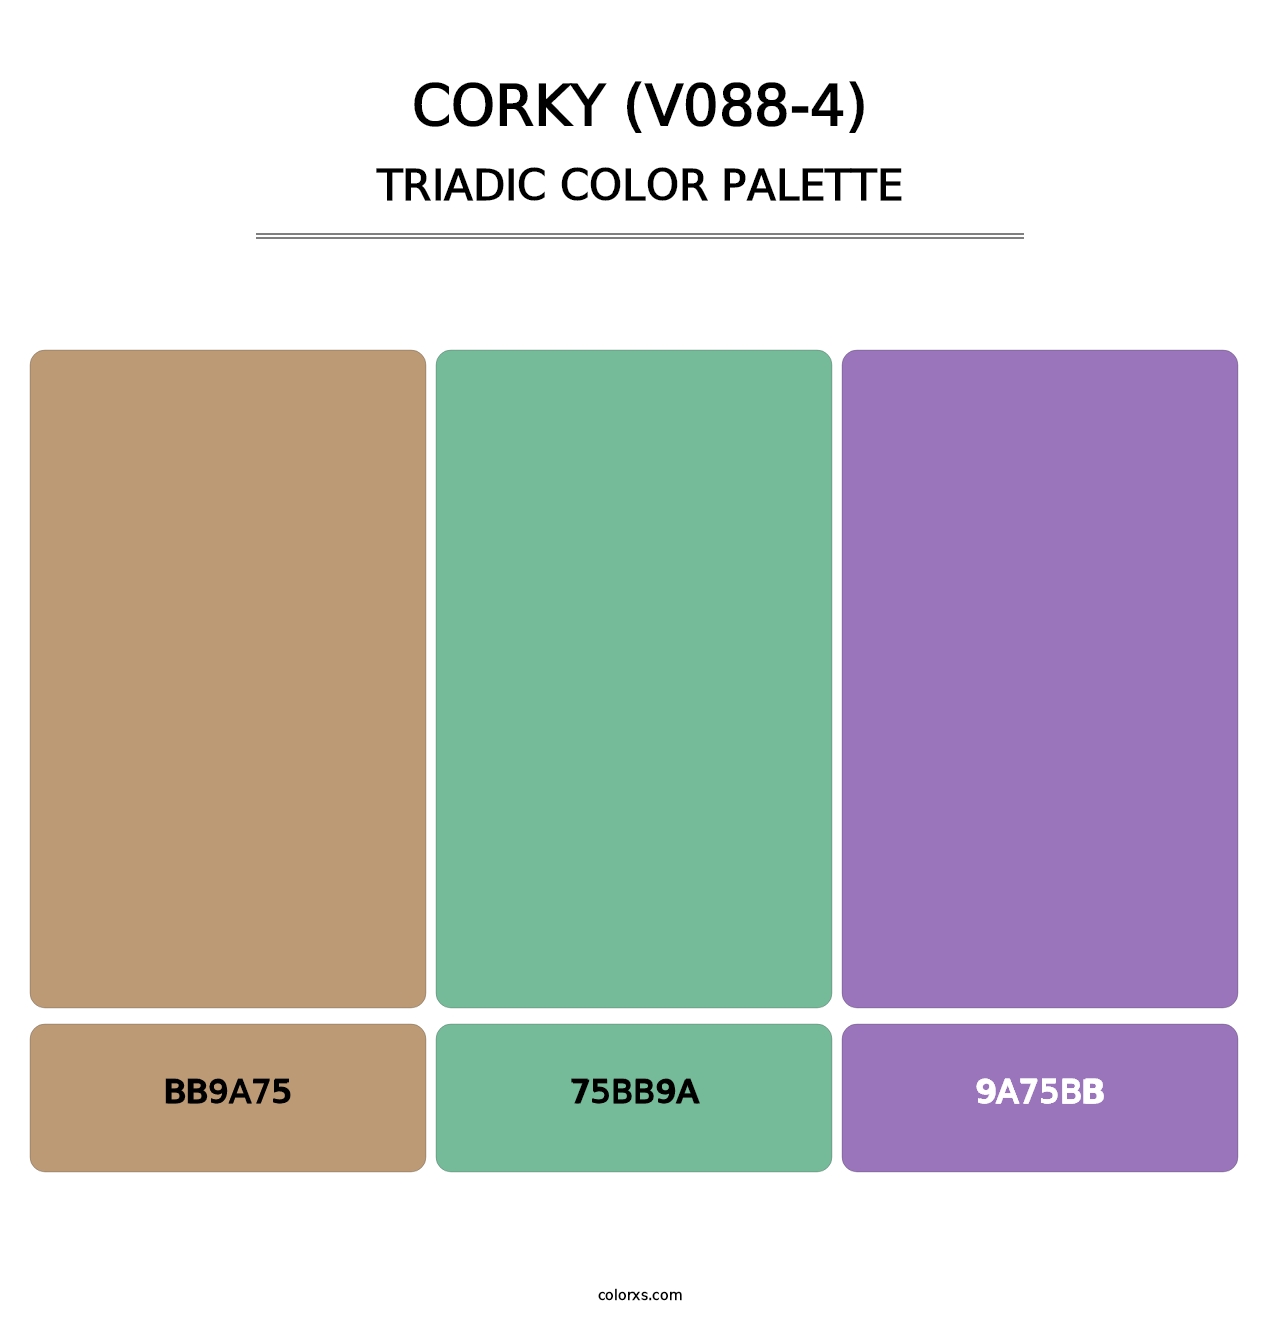 Corky (V088-4) - Triadic Color Palette